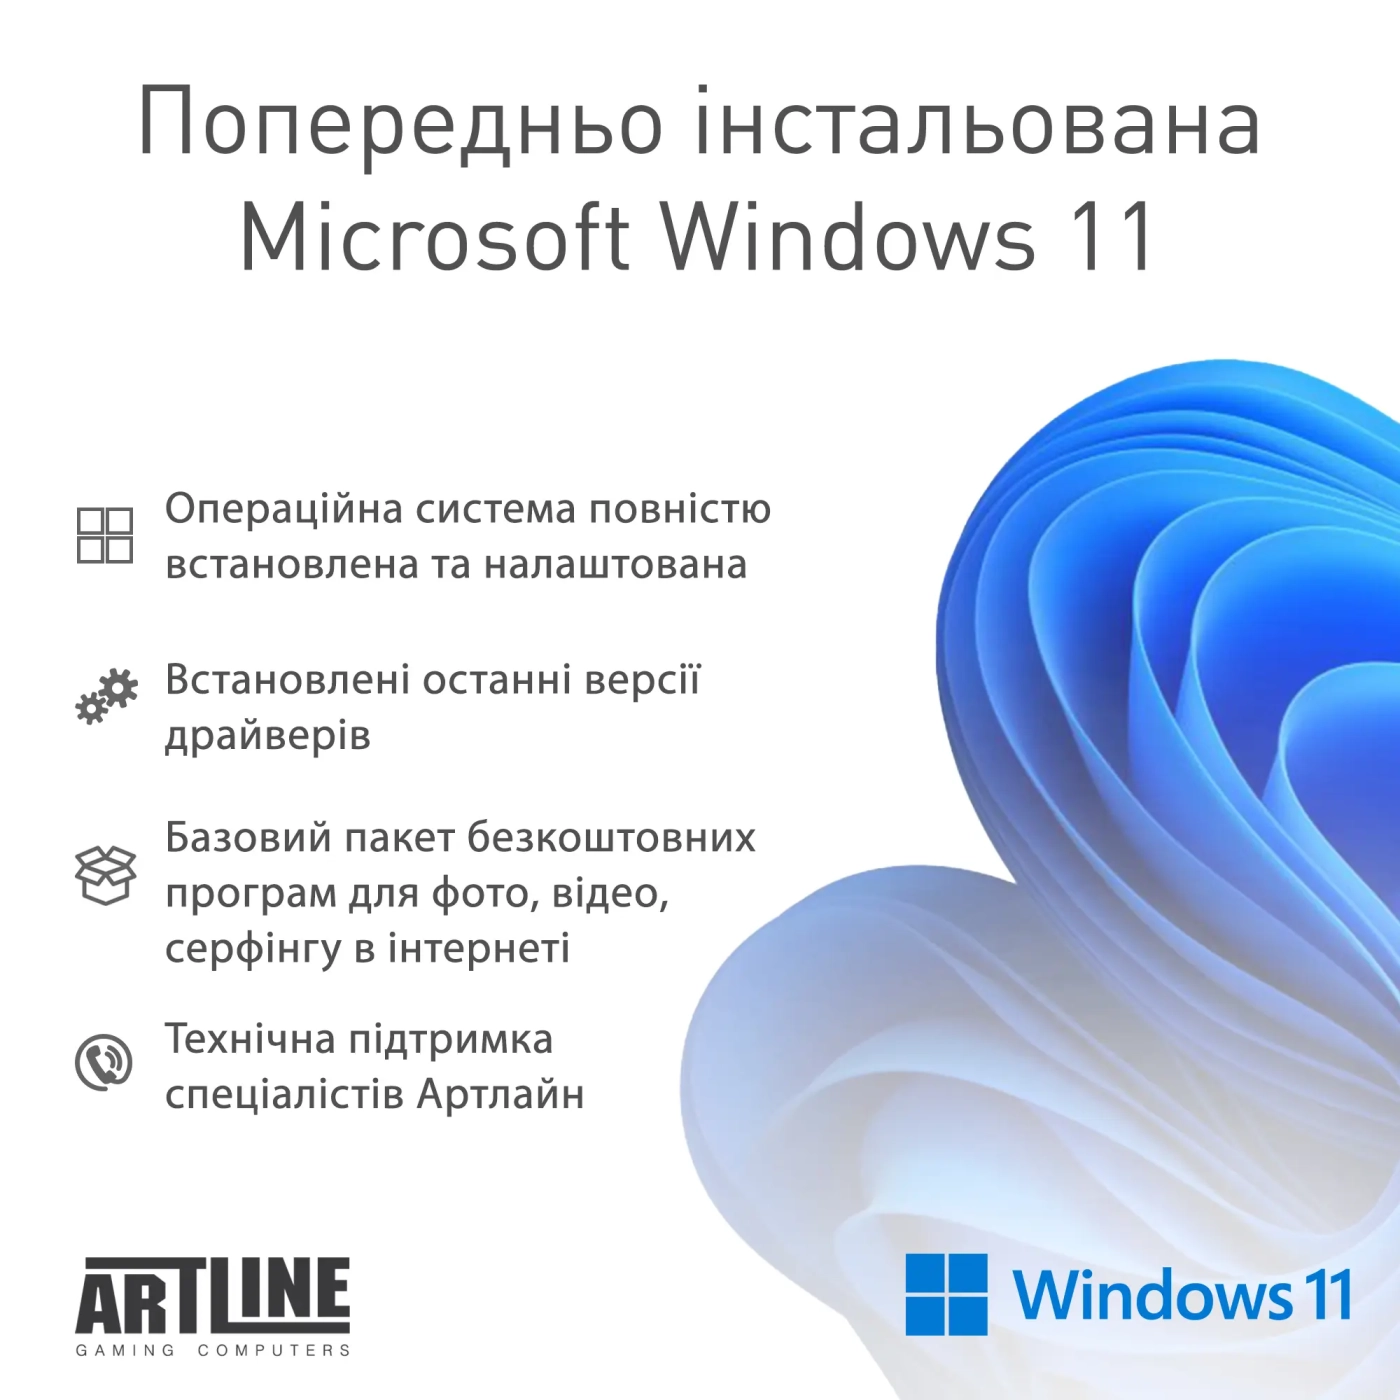 Купить Рабочая станция ARTLINE WorkStation W52 Windows 11 Pro (W52v20Win) - фото 5